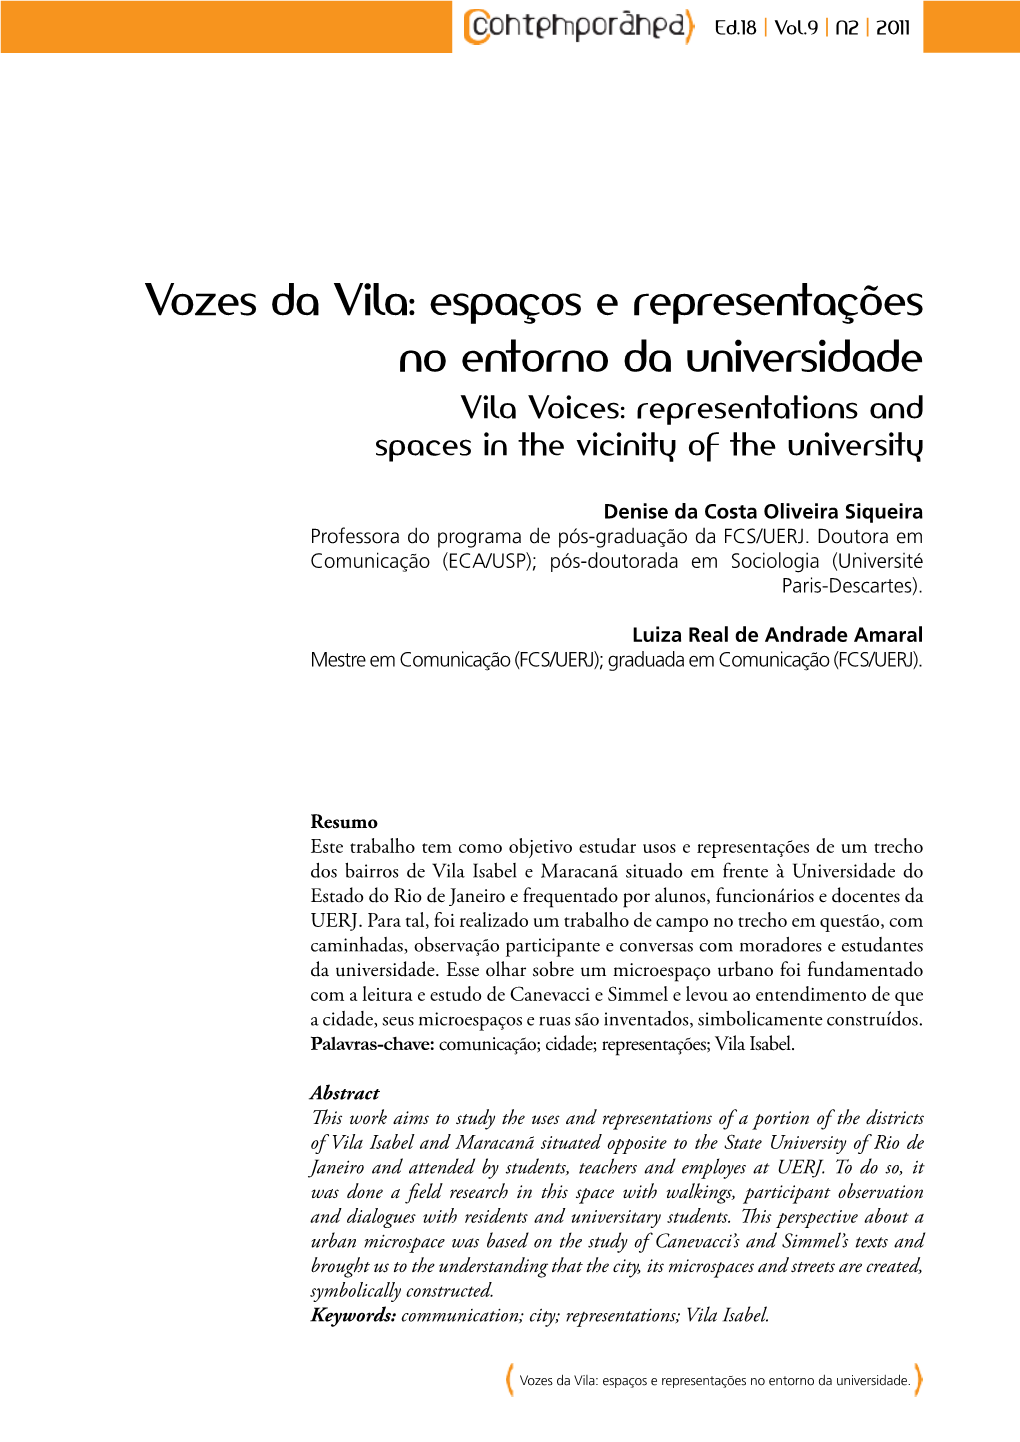 Vozes Da Vila: Espaços E Representações No Entorno Da Universidade Vila Voices: Representations and Spaces in the Vicinity of the University